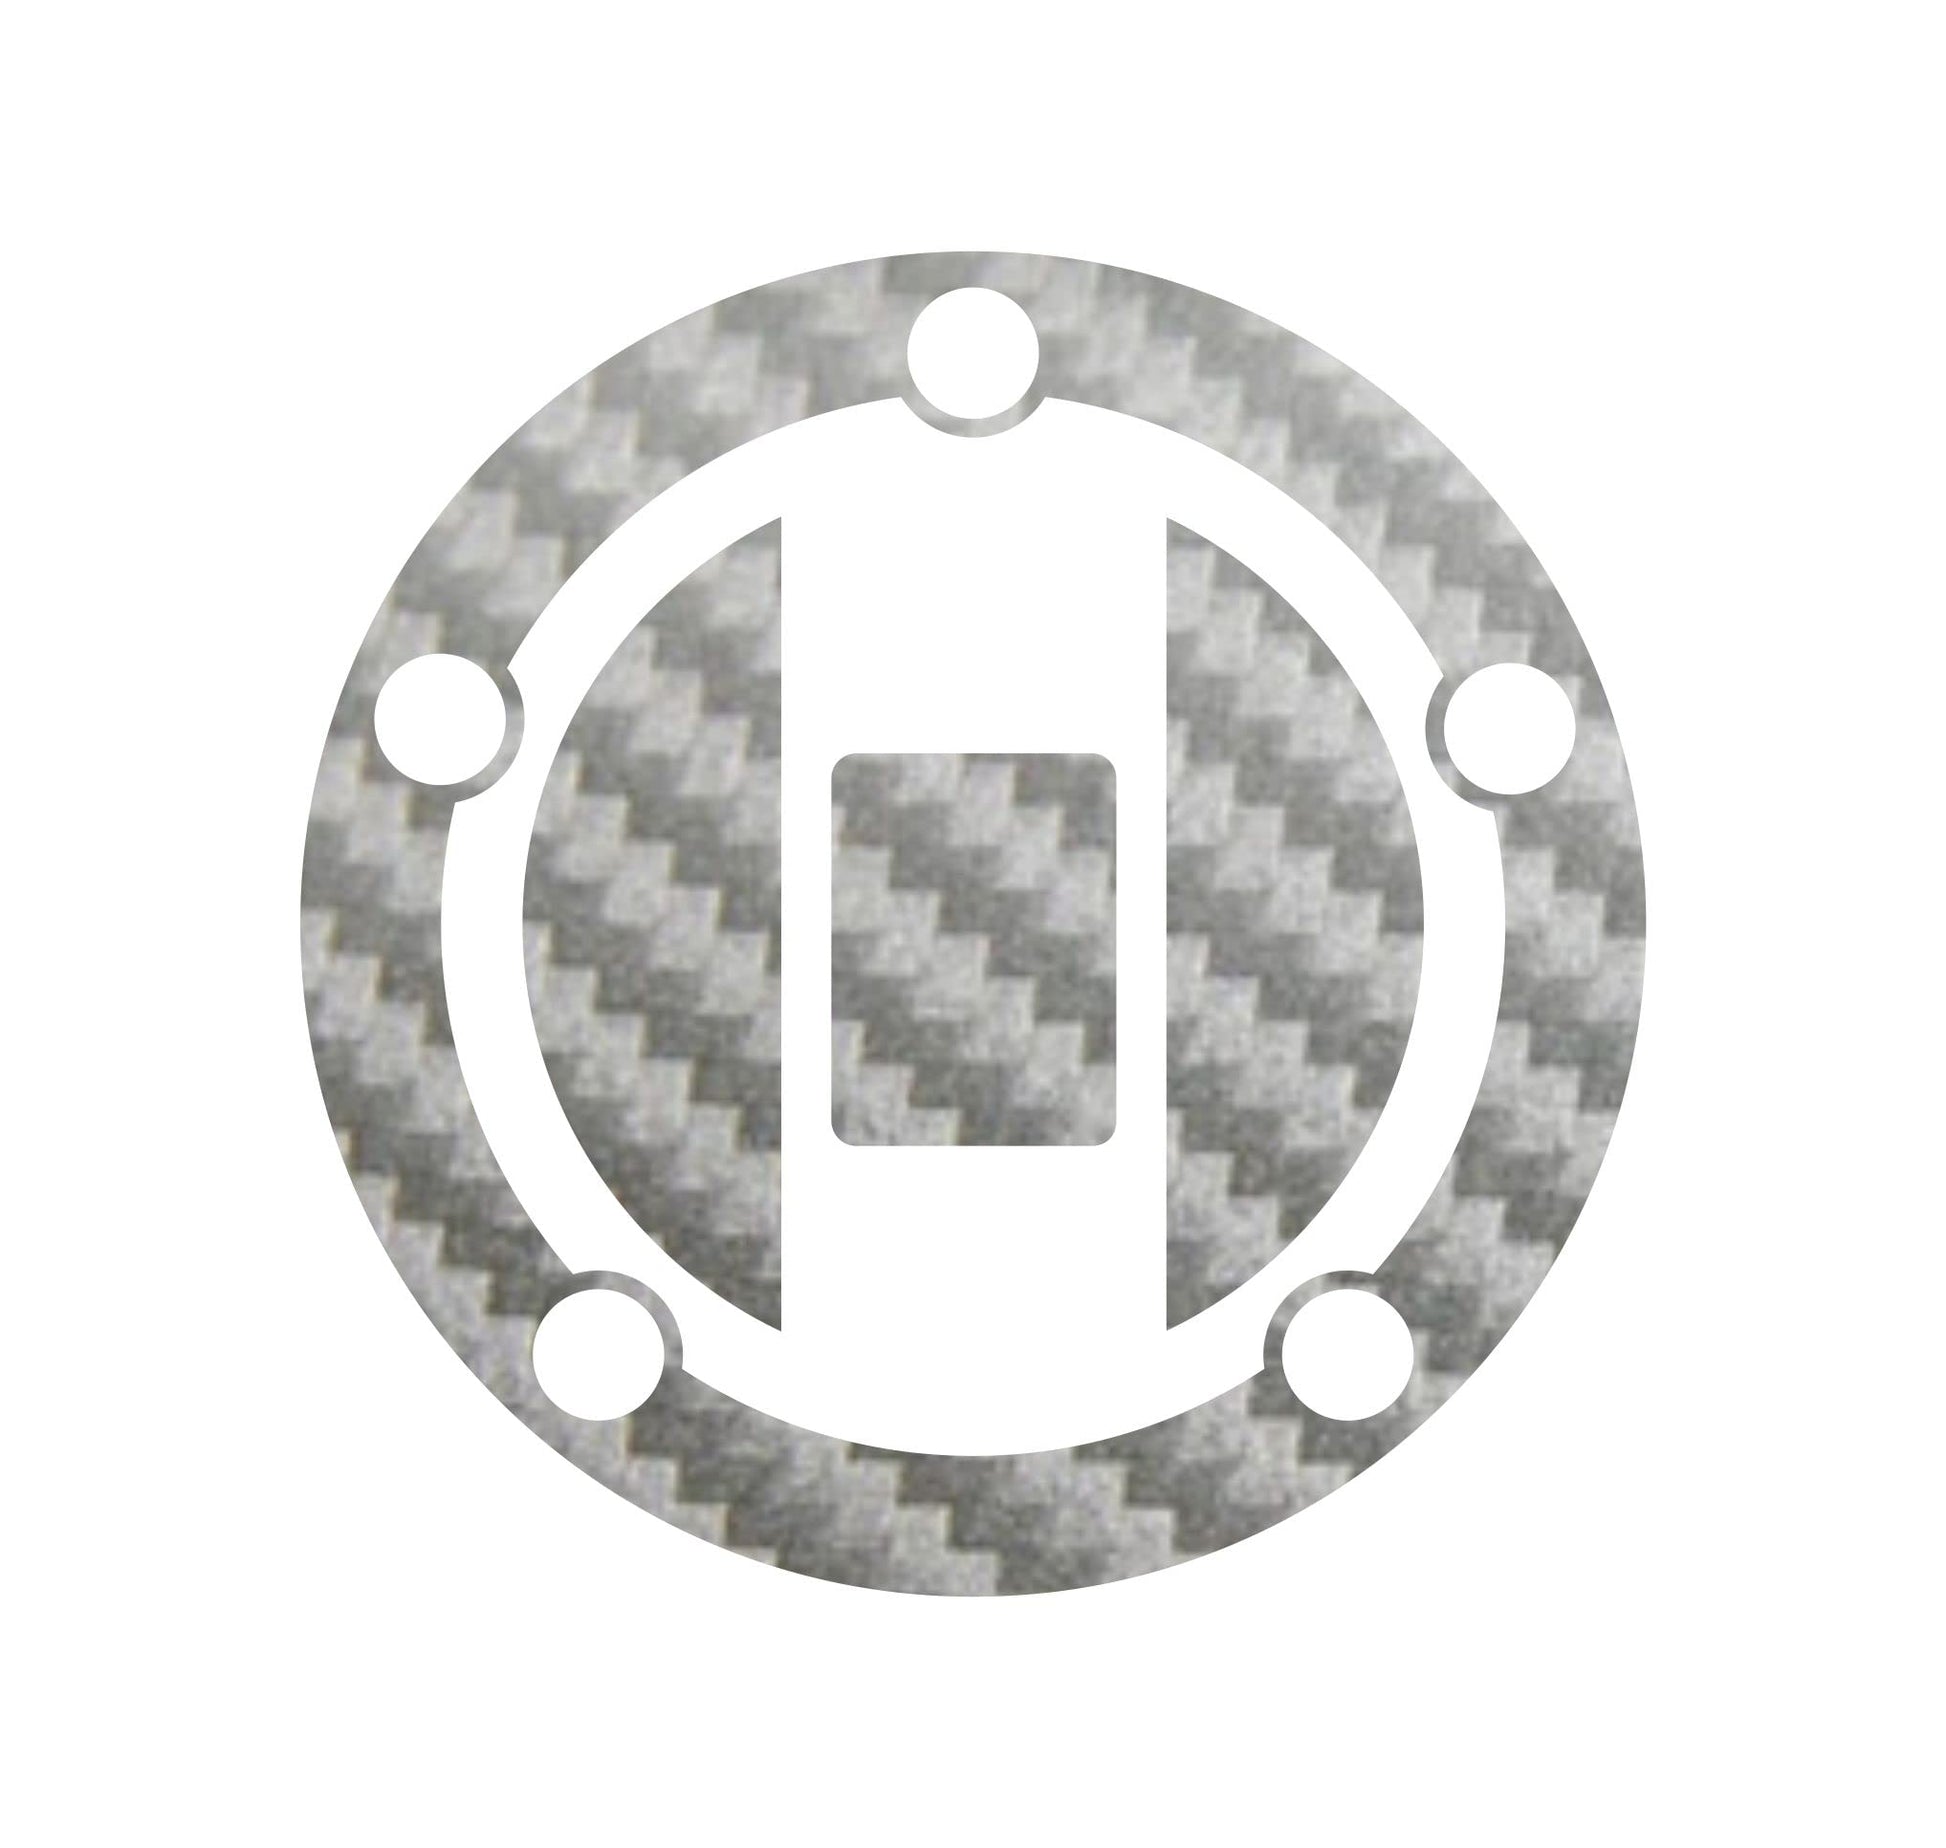 DualColorStampe Adesivo protezione tappo serbatoio compatibile con Suzuki GSX-R600 (2004-2011) carbonio moto M0176 a €9.99 solo da DualColorStampe